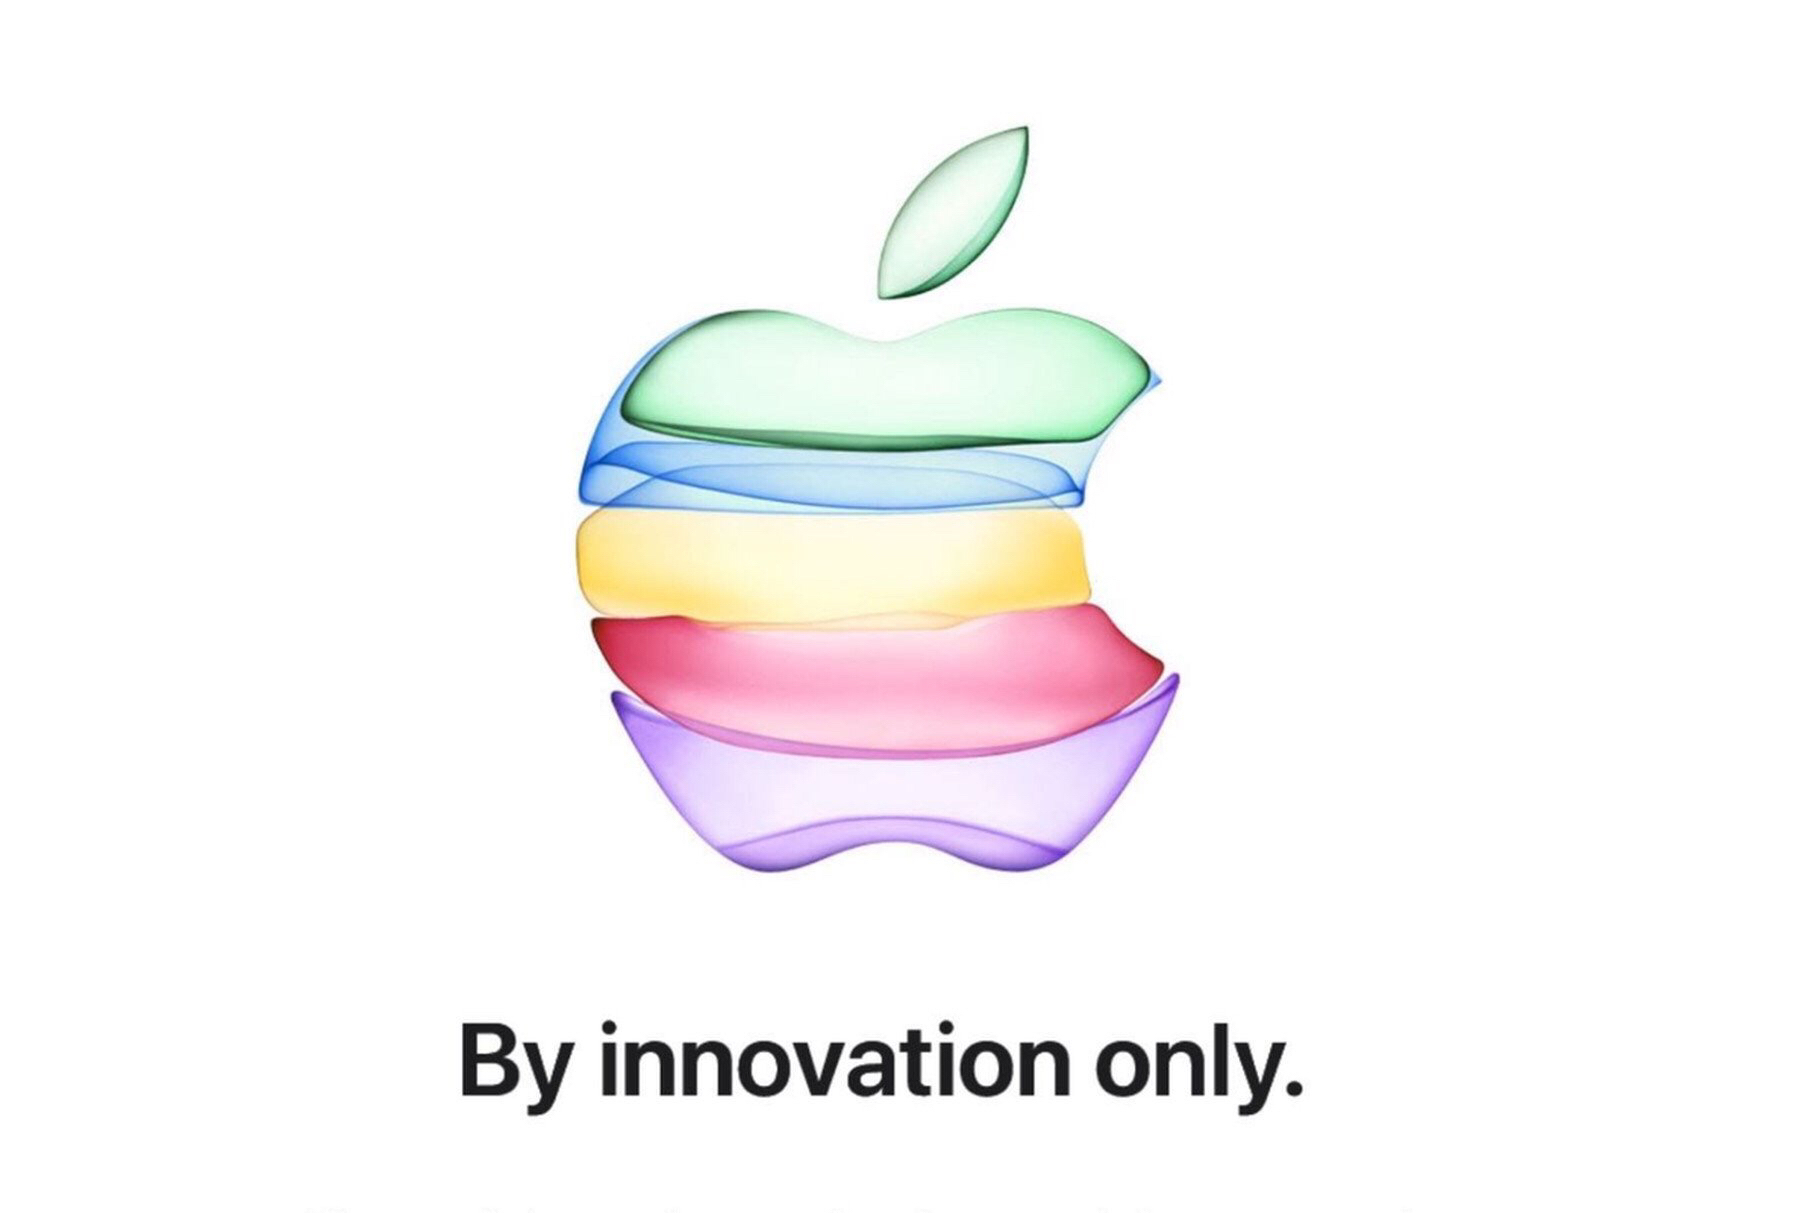 Nhiều bác đang cố tìm hiểu ý nghĩa màu sắc ẩn sau bức thông điệp ra mắt của Apple, sau khi phân tíc